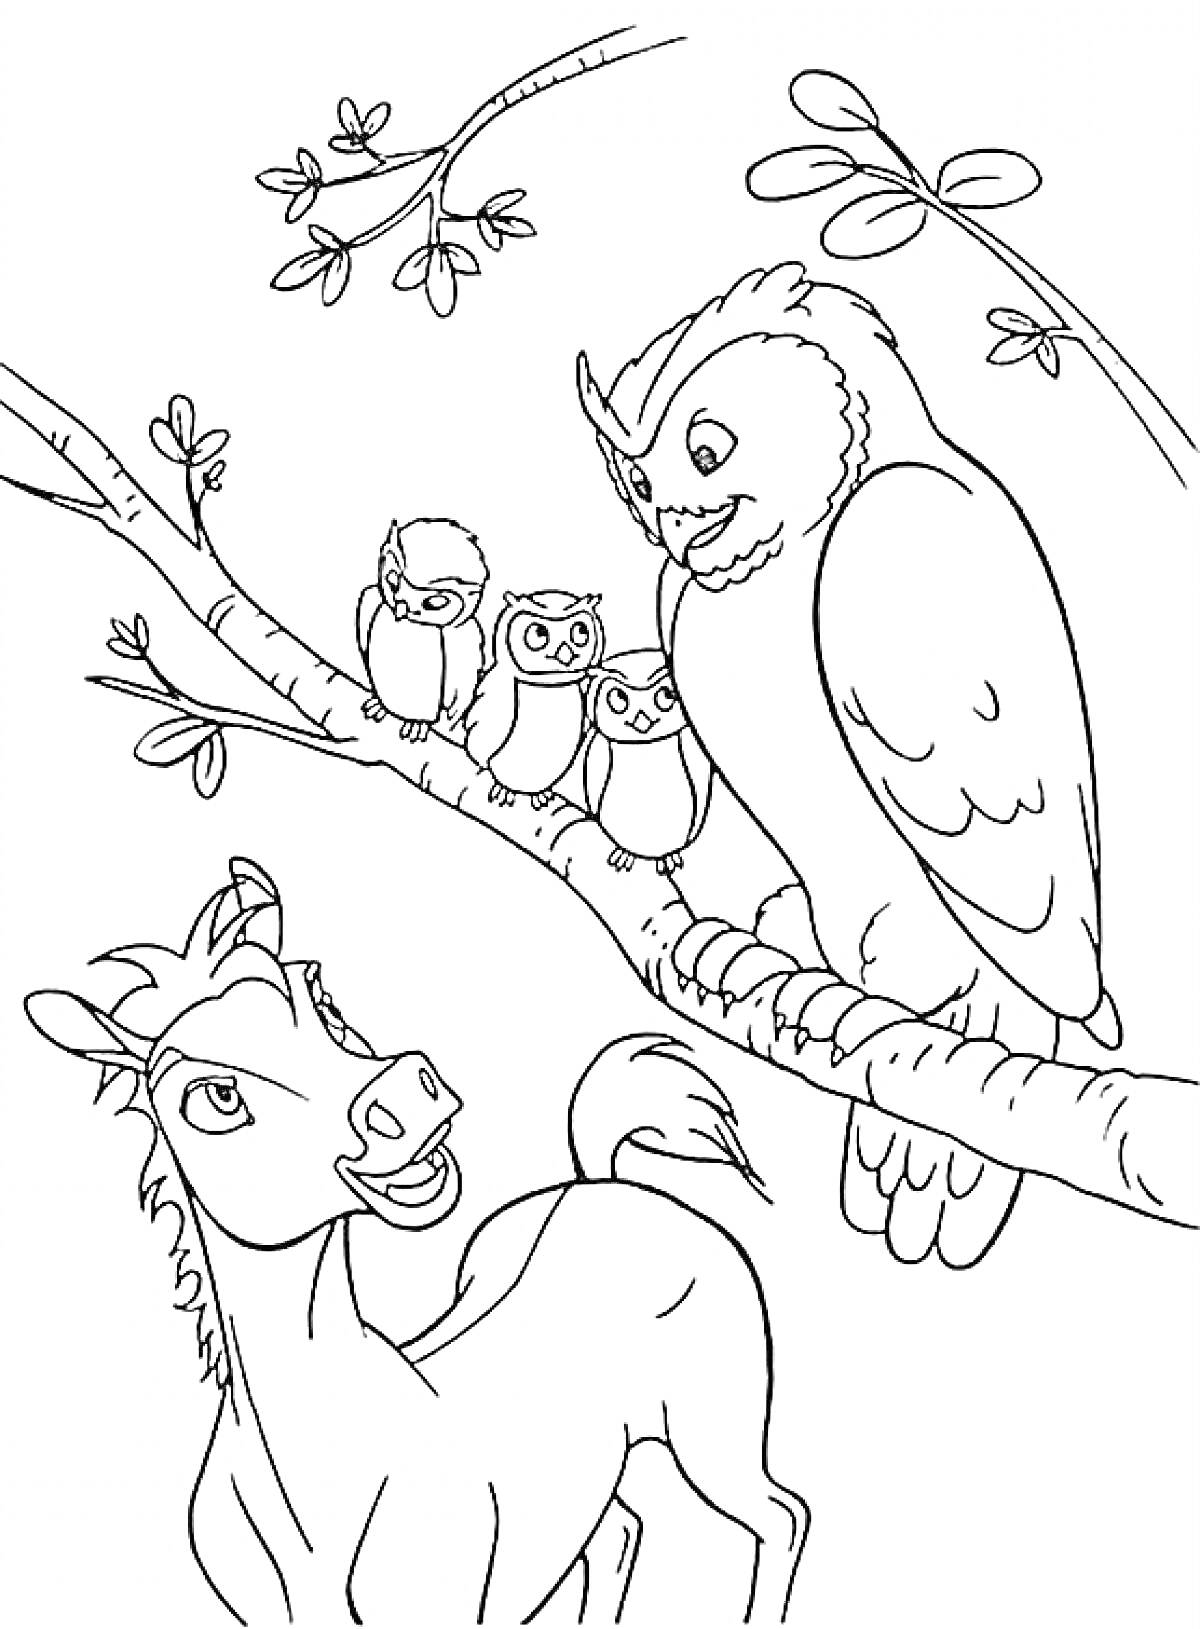 Раскраска Лошадь и совы на дереве